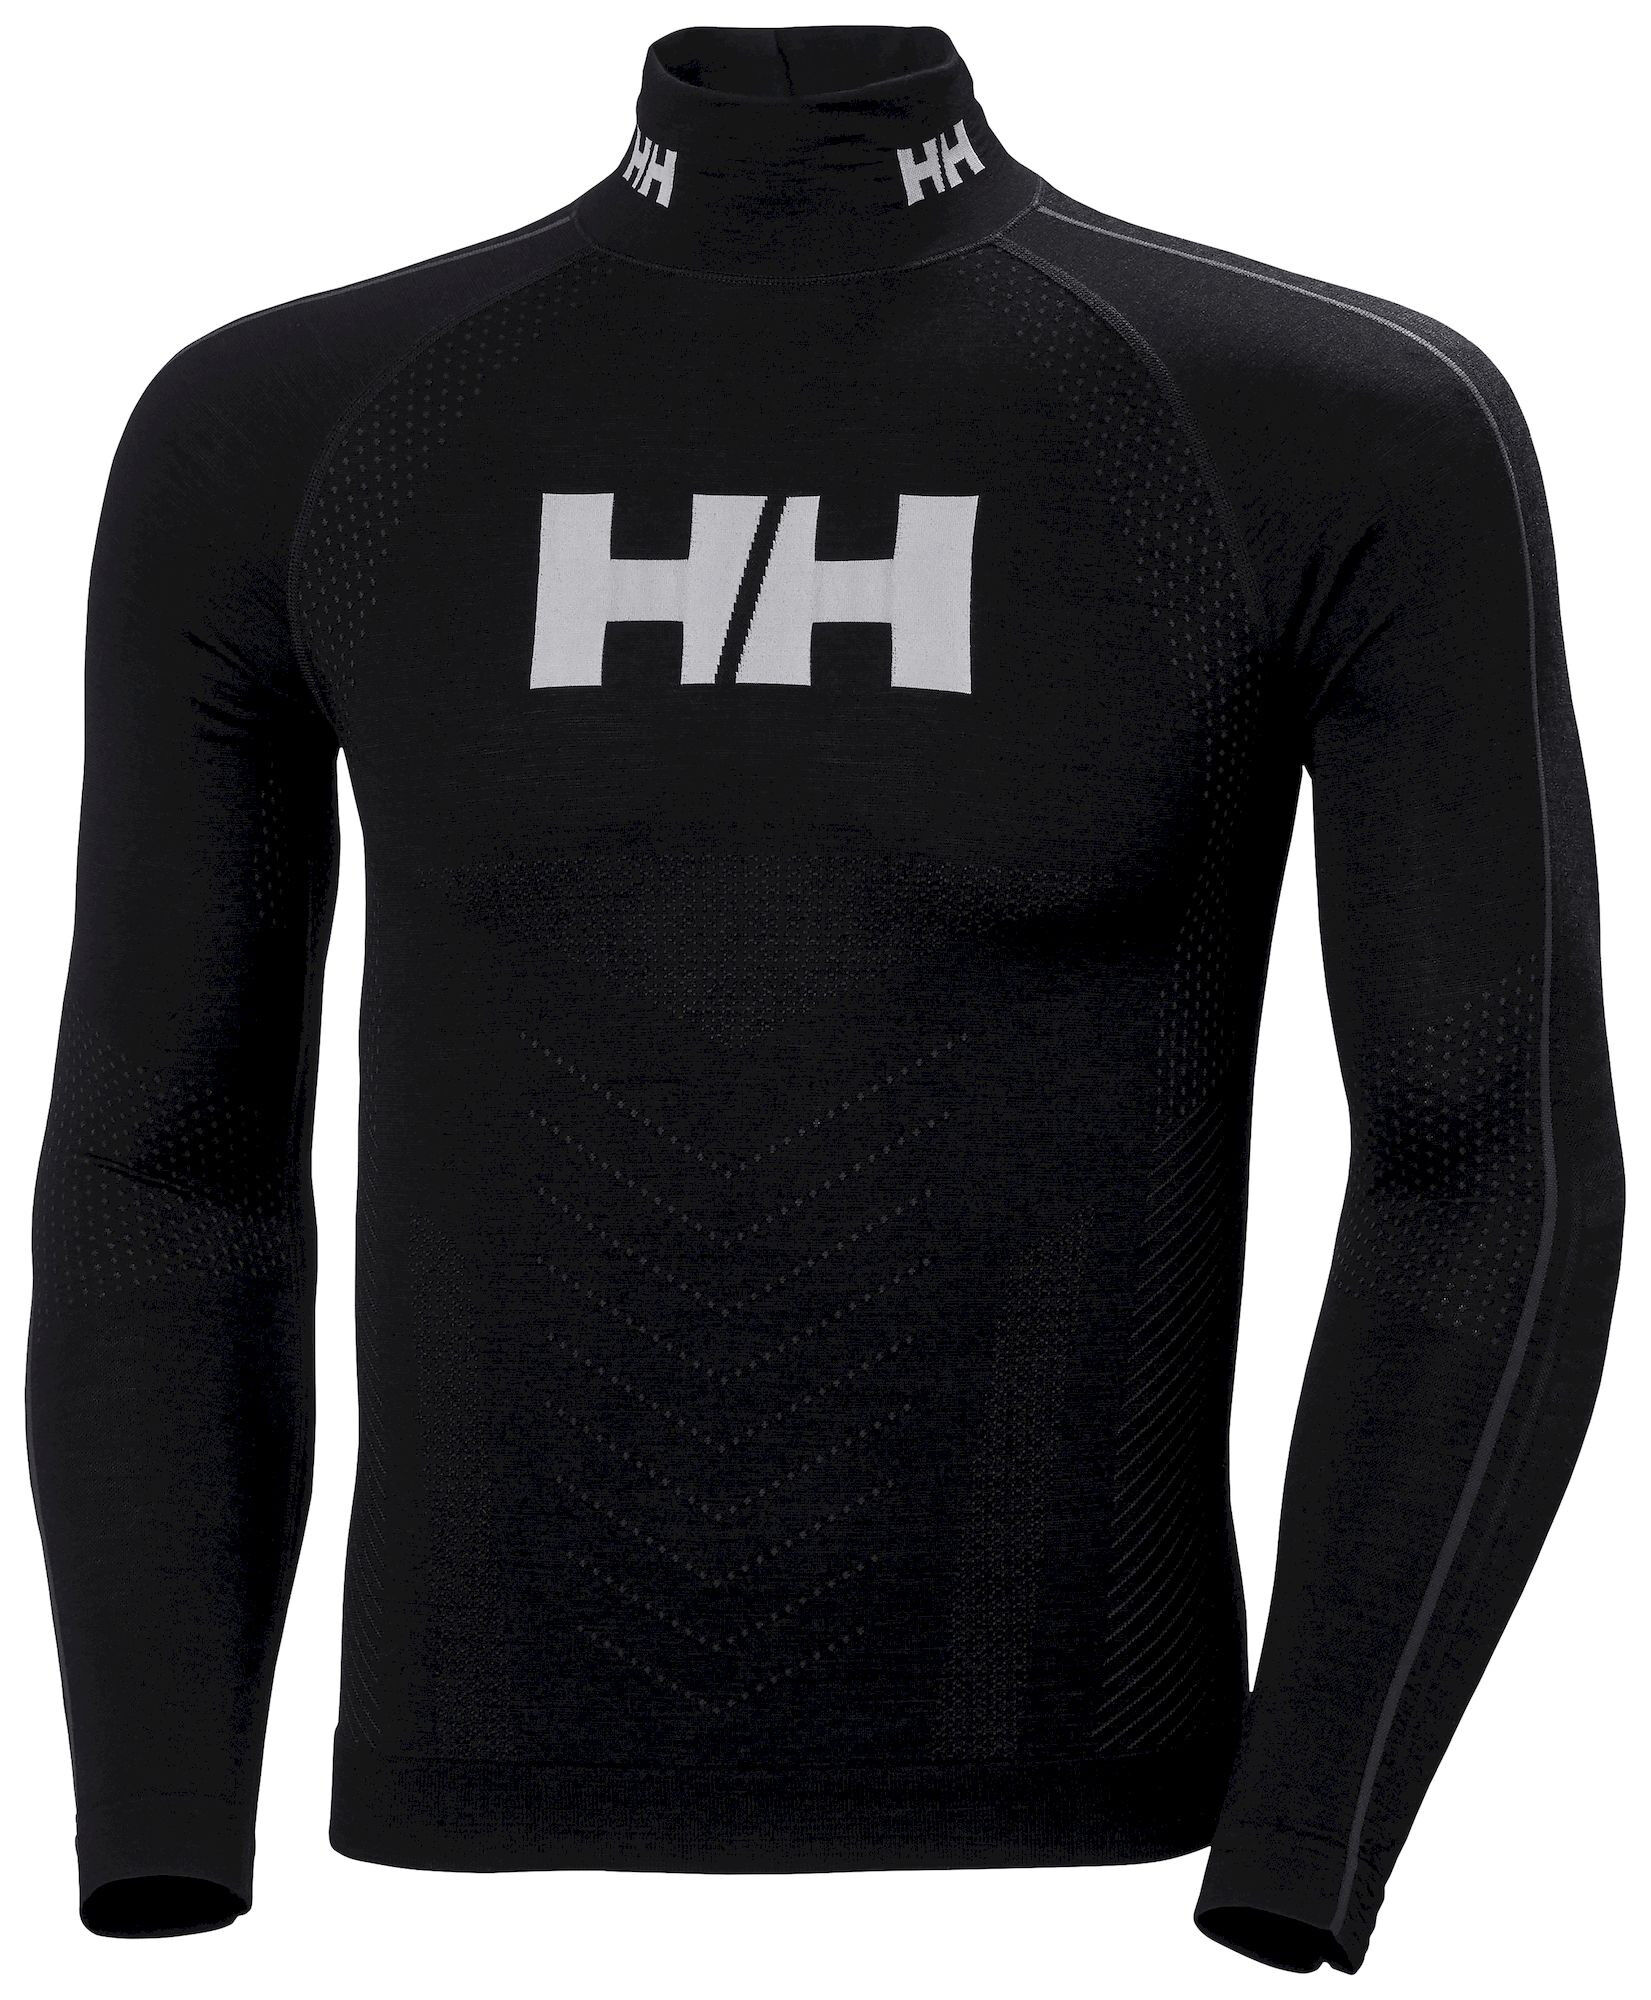 Helly Hansen H1 Pro Lifa Merino Race Top - Sous-vêtement thermique